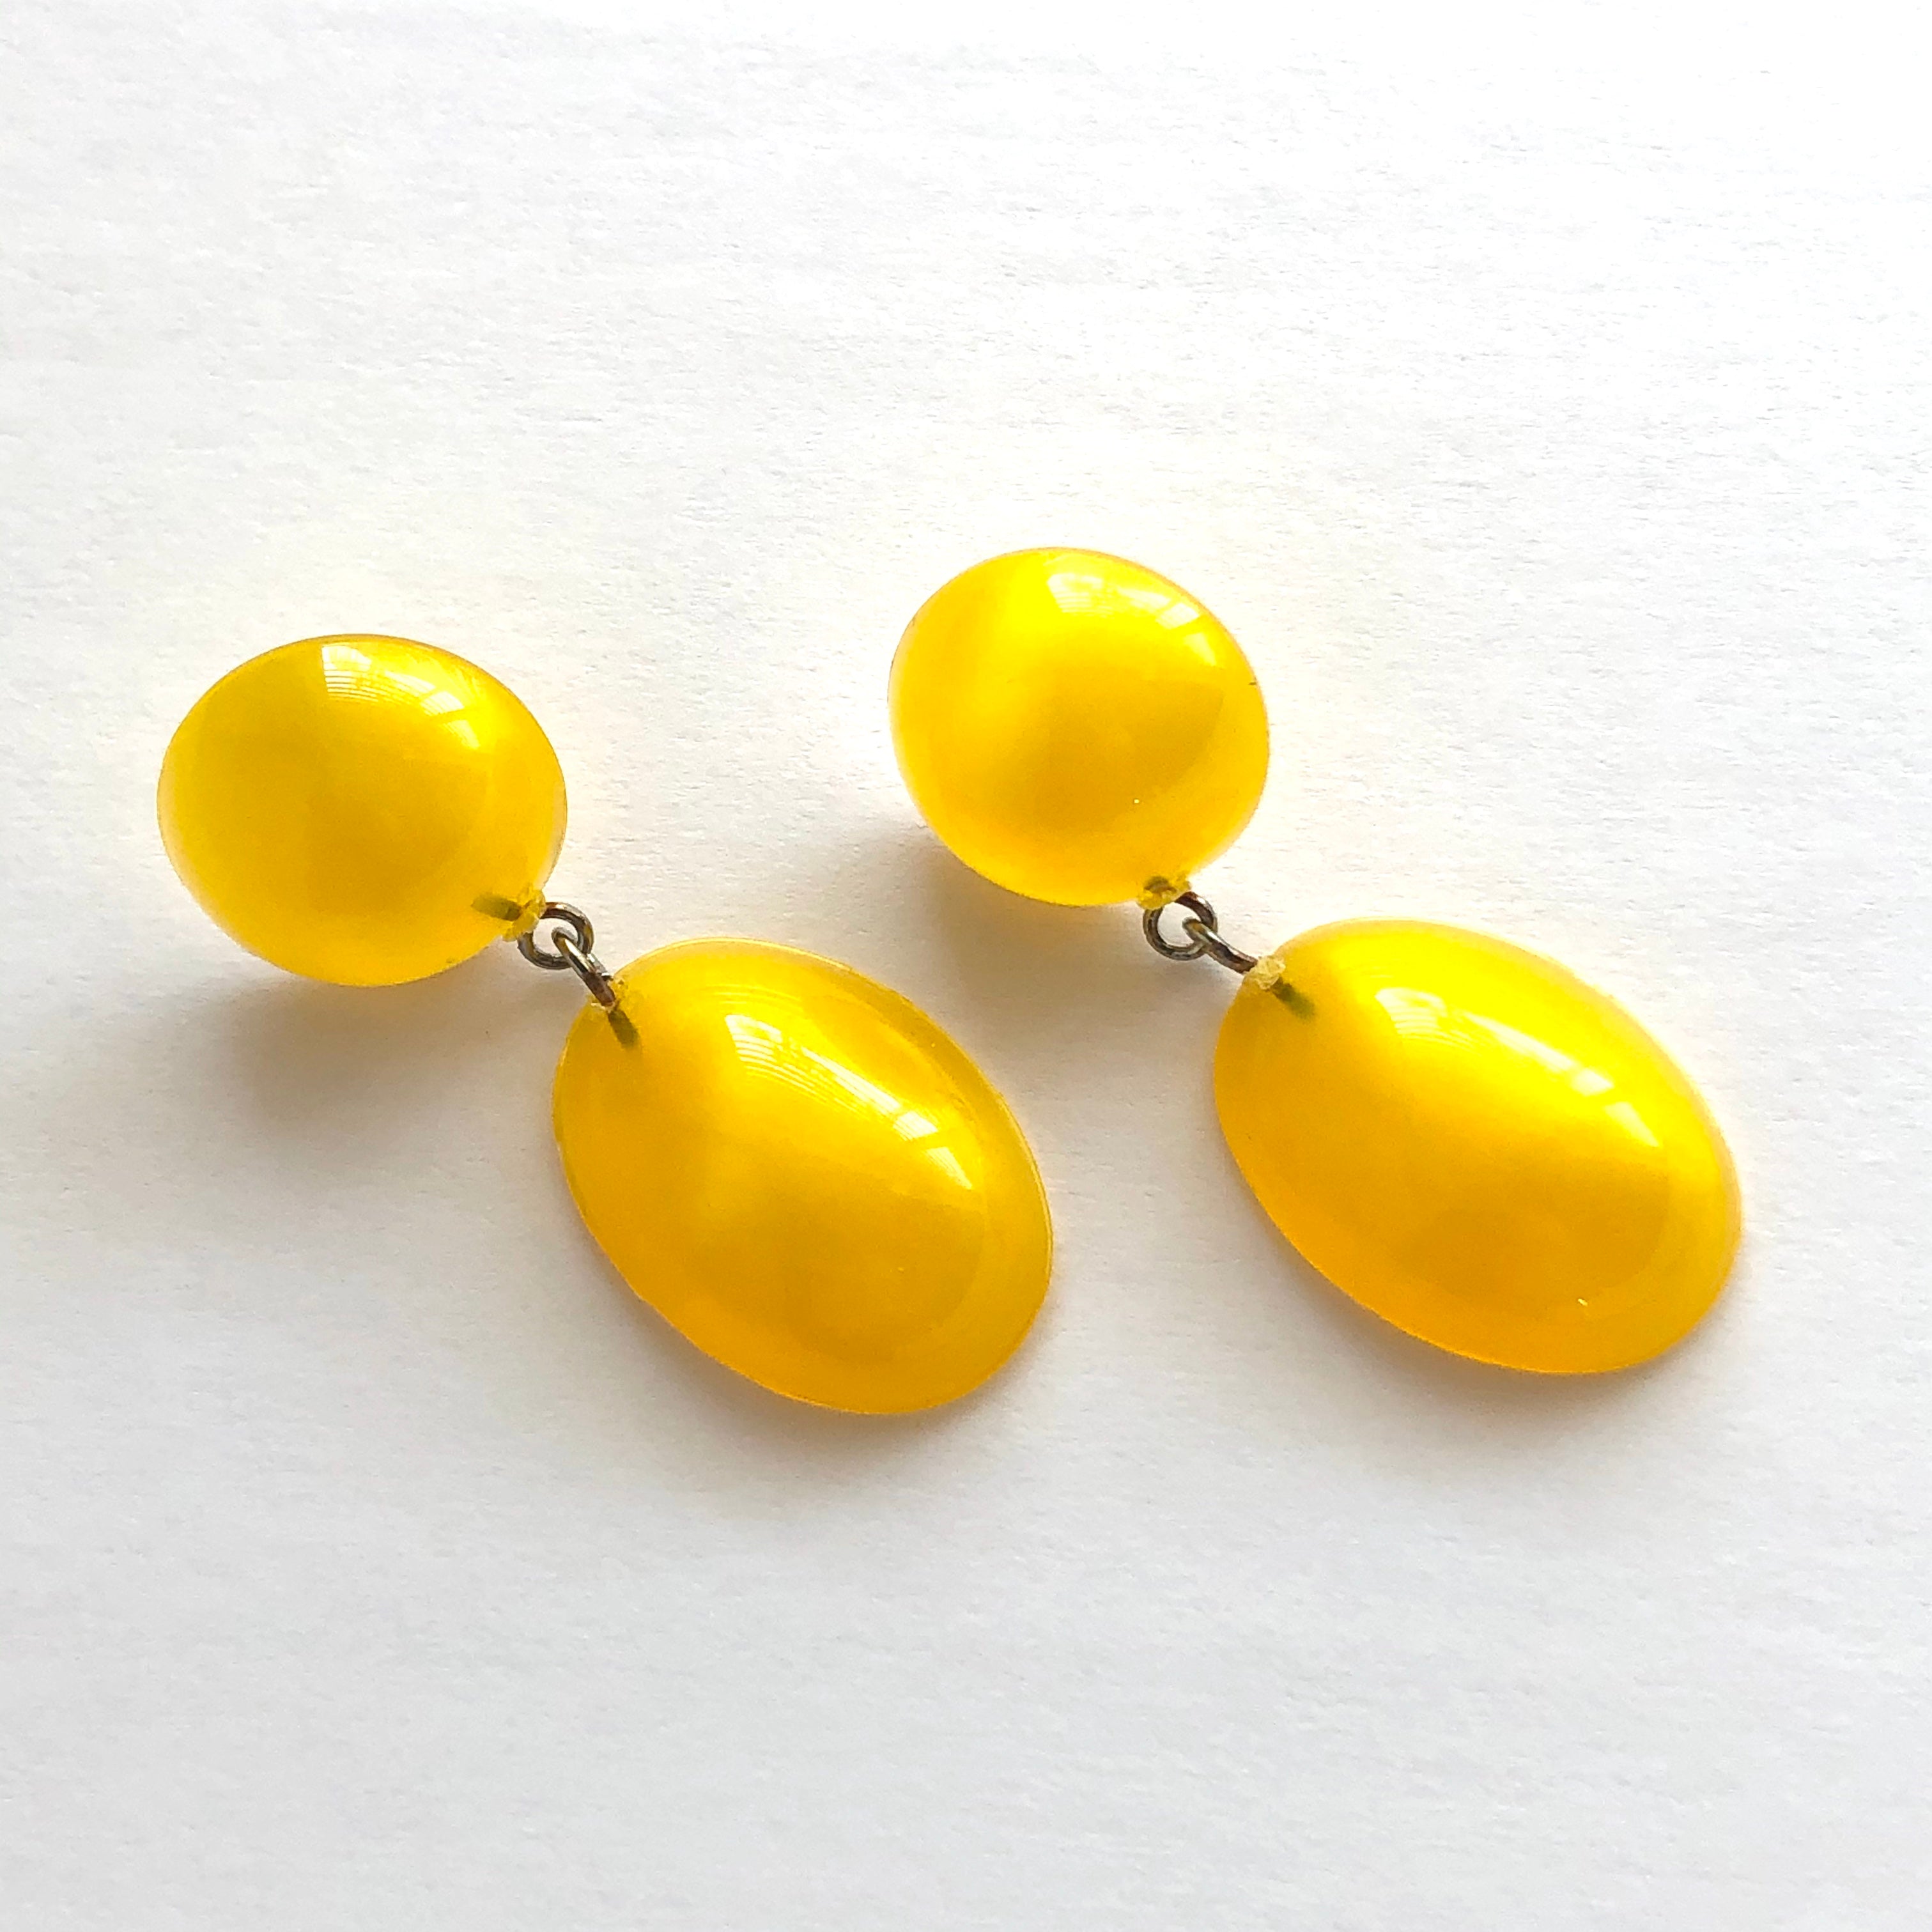 Yellow Aura Glow Jelly Bean Earrings